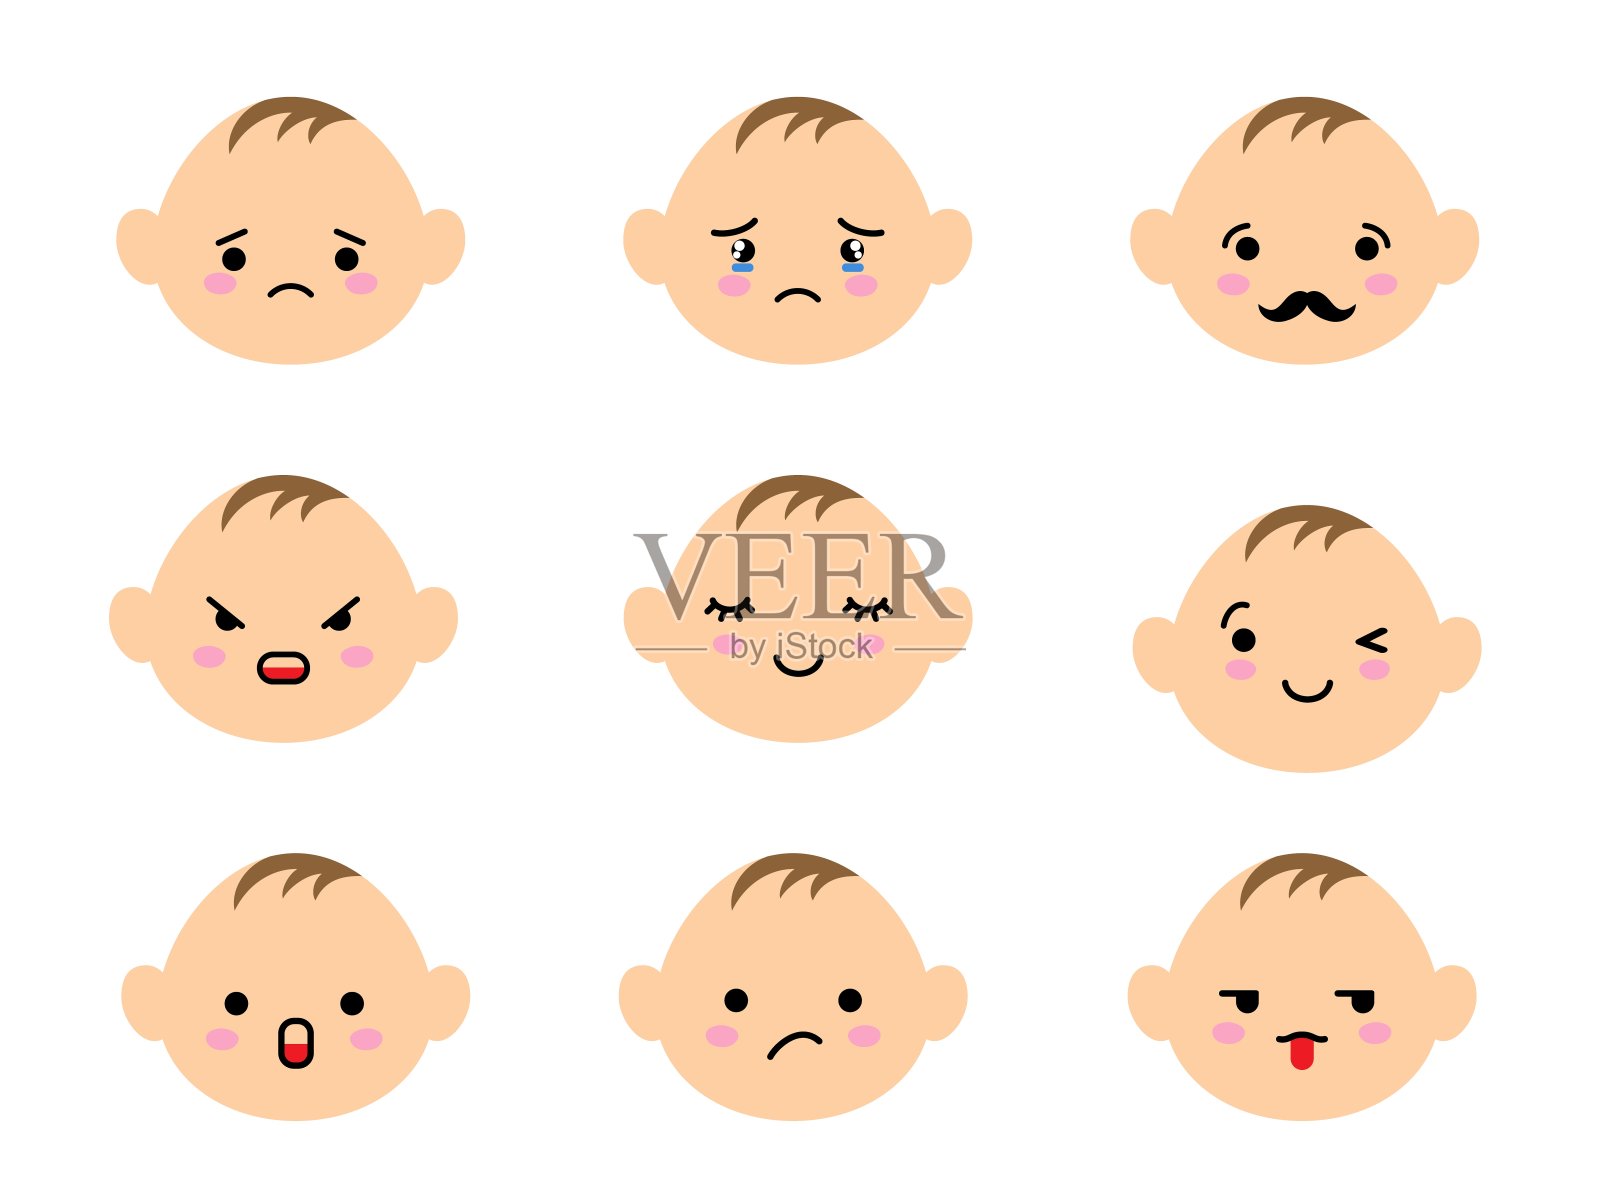 一组不同情绪的婴儿表情。卡哇伊可爱的孩子表情符号和日本动漫表情符号面部表情。插画图片素材